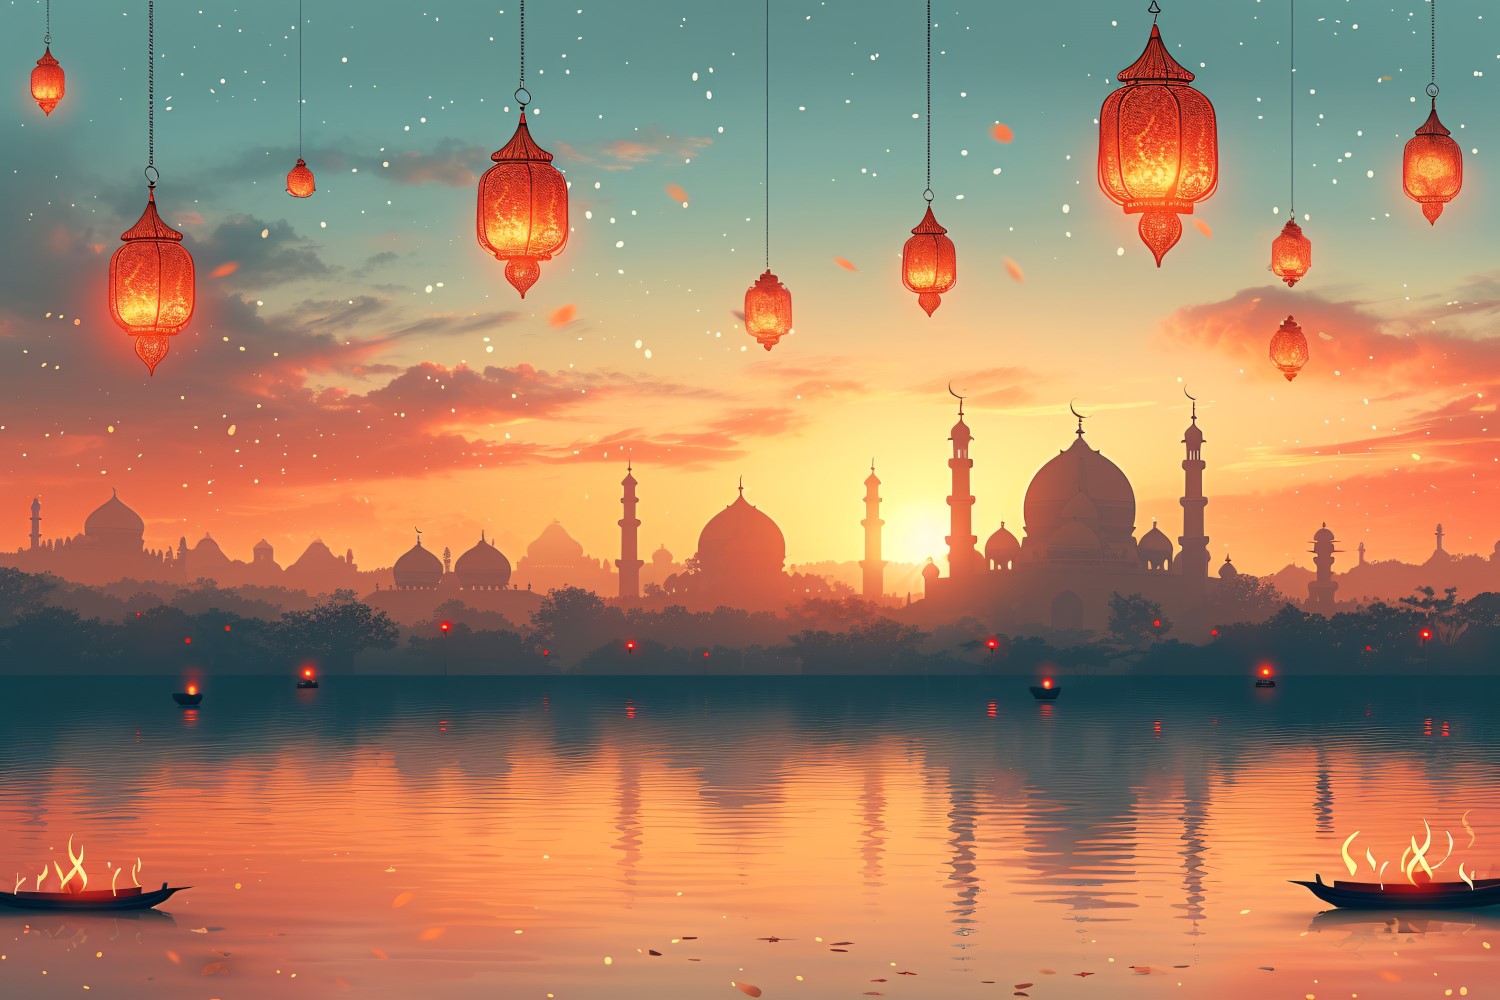 Ramadan Kareem greeting card banner design with lantern & mosque